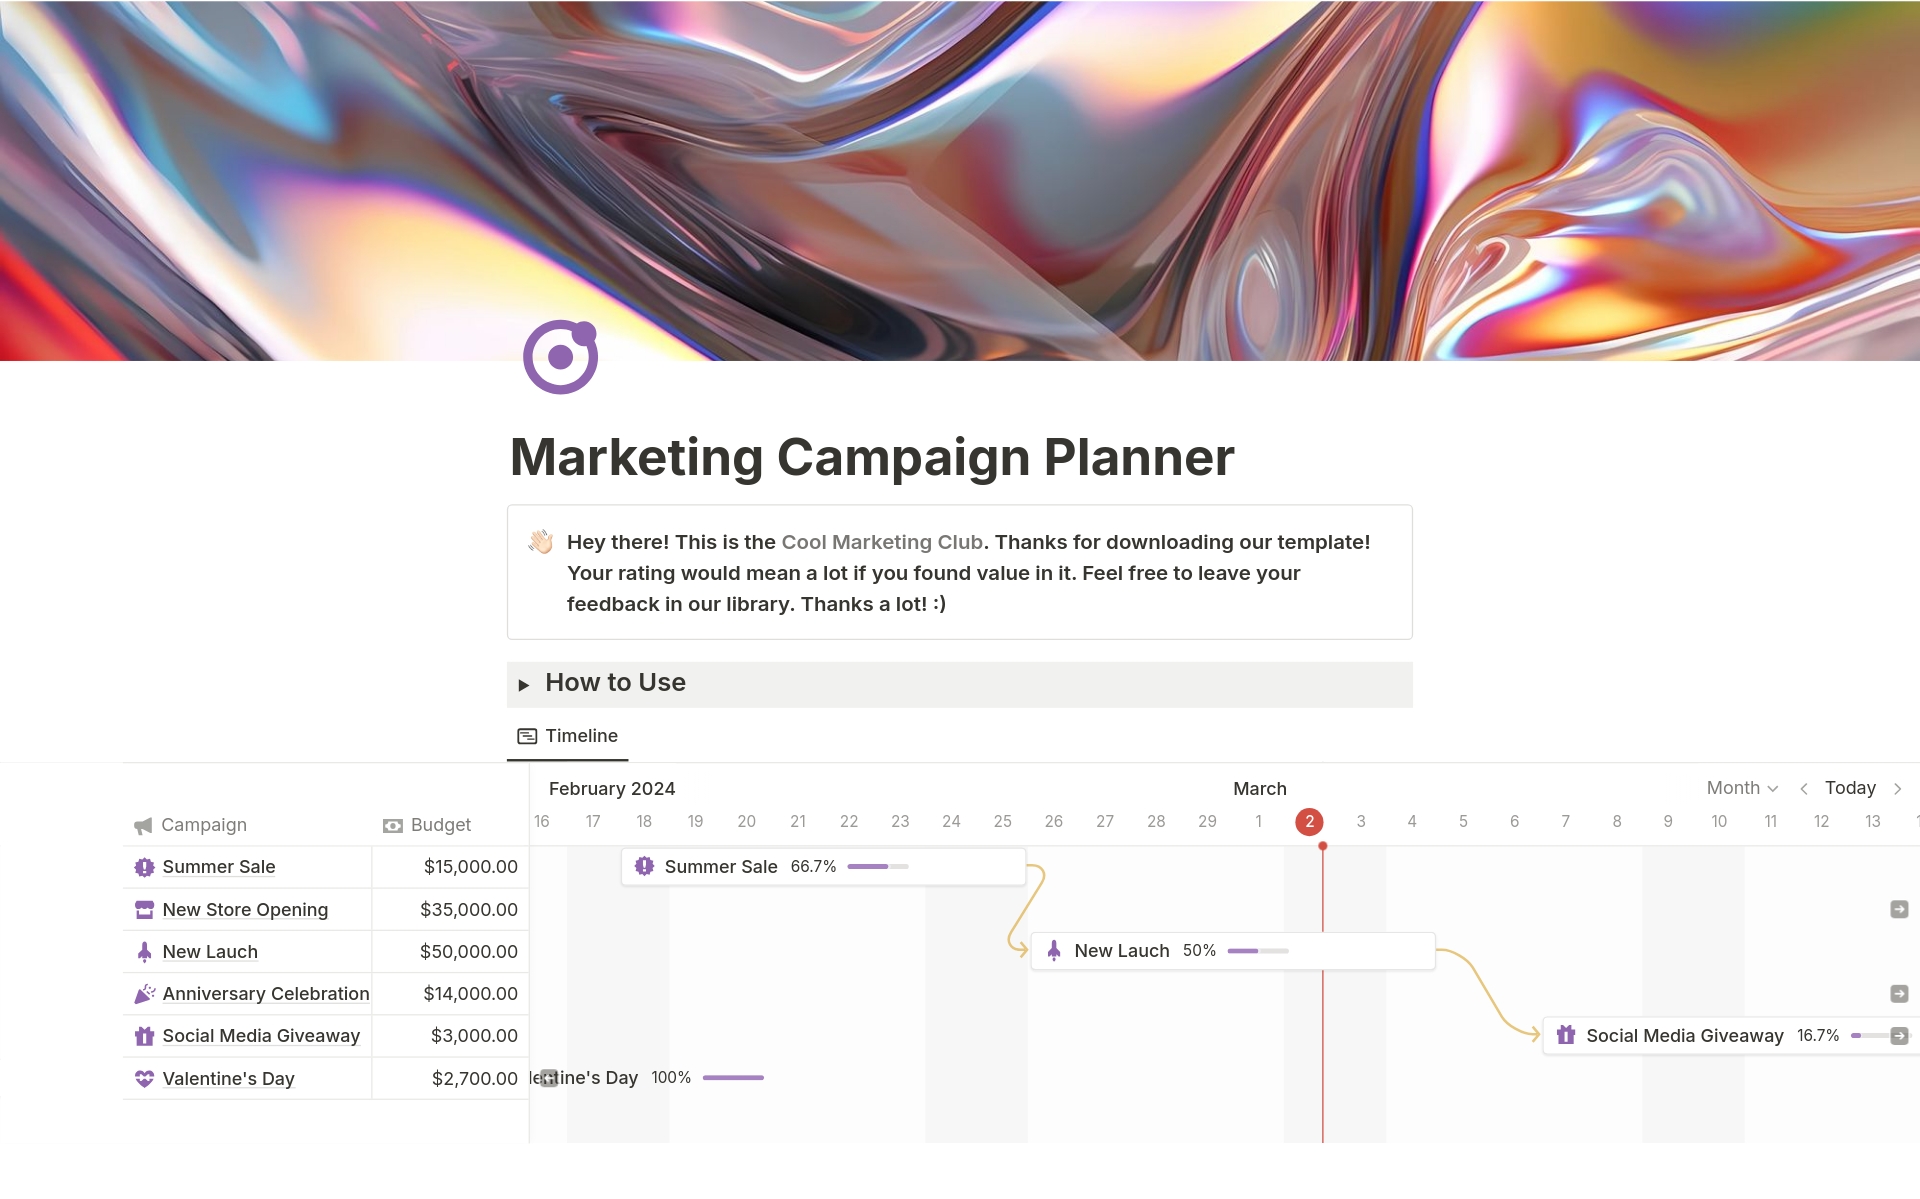 Uma prévia do modelo para Marketing Campaign Planner